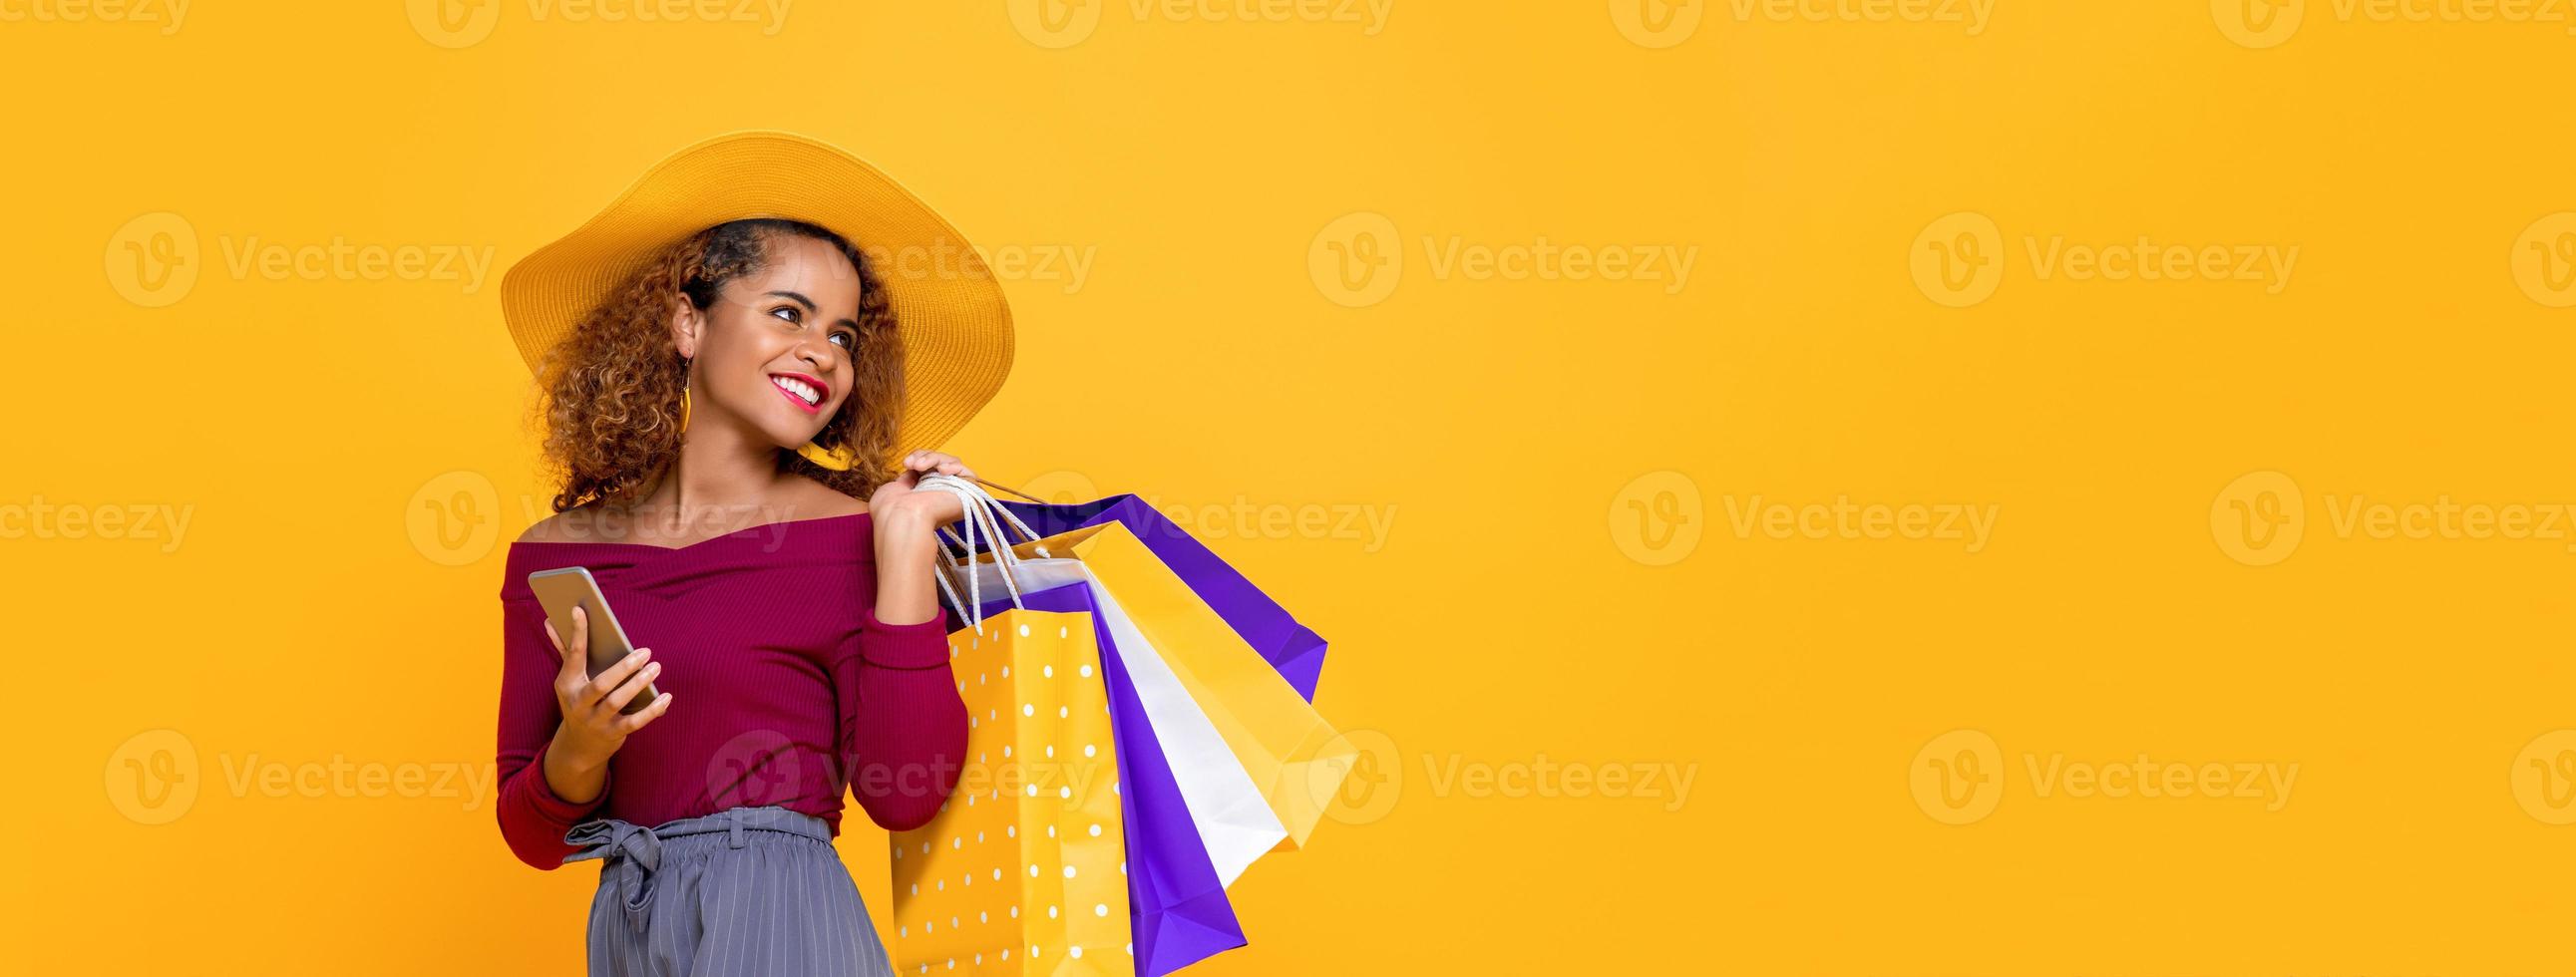 modieuze glimlachende gemengd ras vrouw met kleurrijke boodschappentassen en mobiele telefoon geïsoleerd op gele achtergrond voor zomer verkoop conept foto